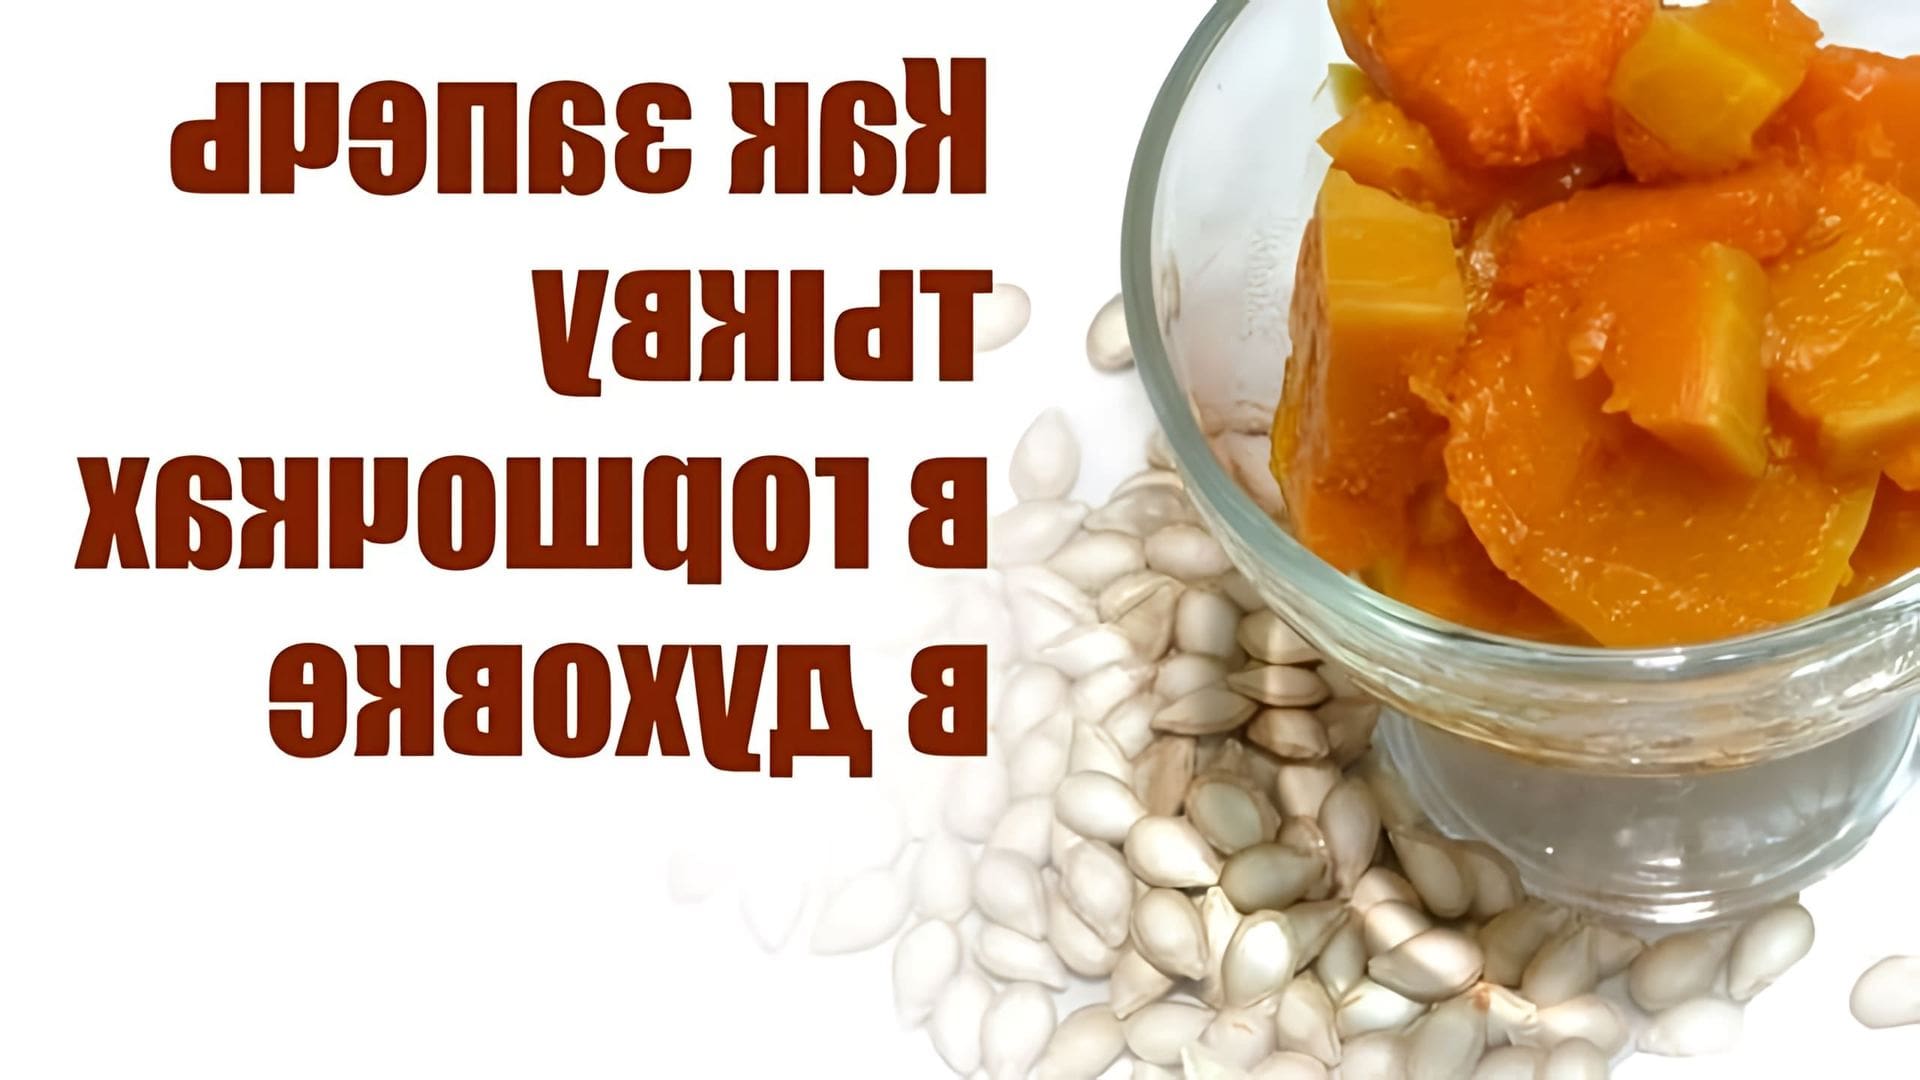 В этом видео демонстрируется простой и полезный рецепт приготовления тыквы в керамических горшочках в духовке